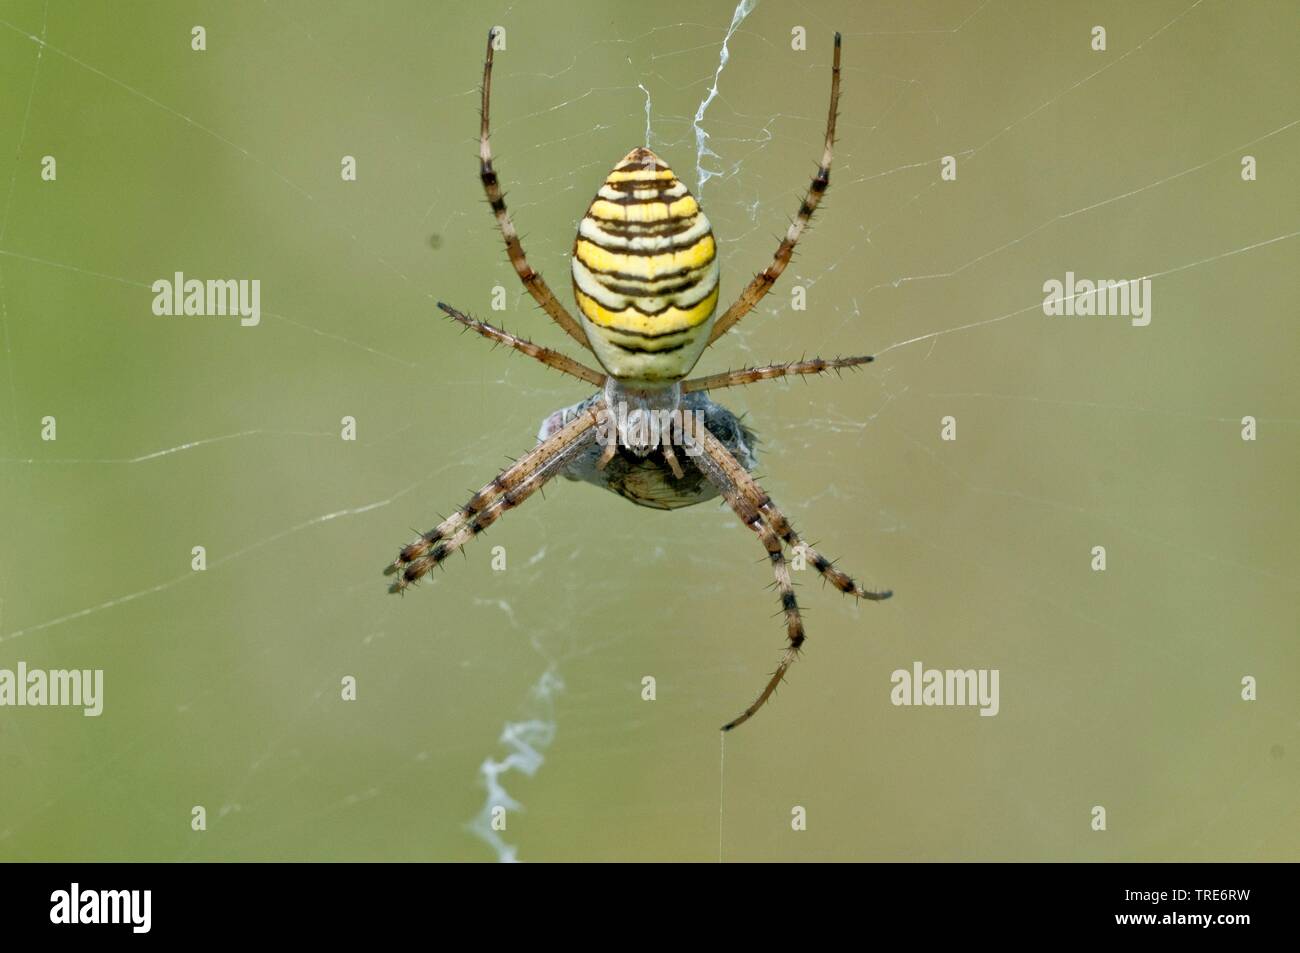 Noir et jaune argiope, noir et jaune spider Argiope bruennichi (jardin), dans le web, Allemagne Banque D'Images